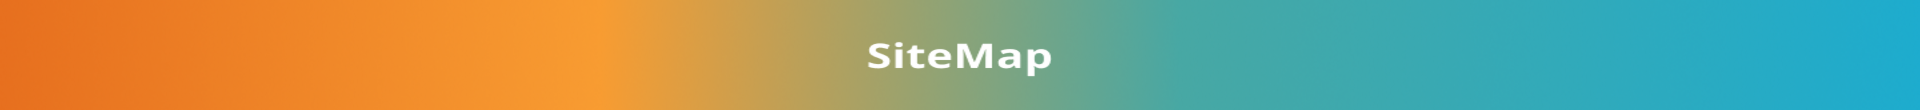 sitemap-banner